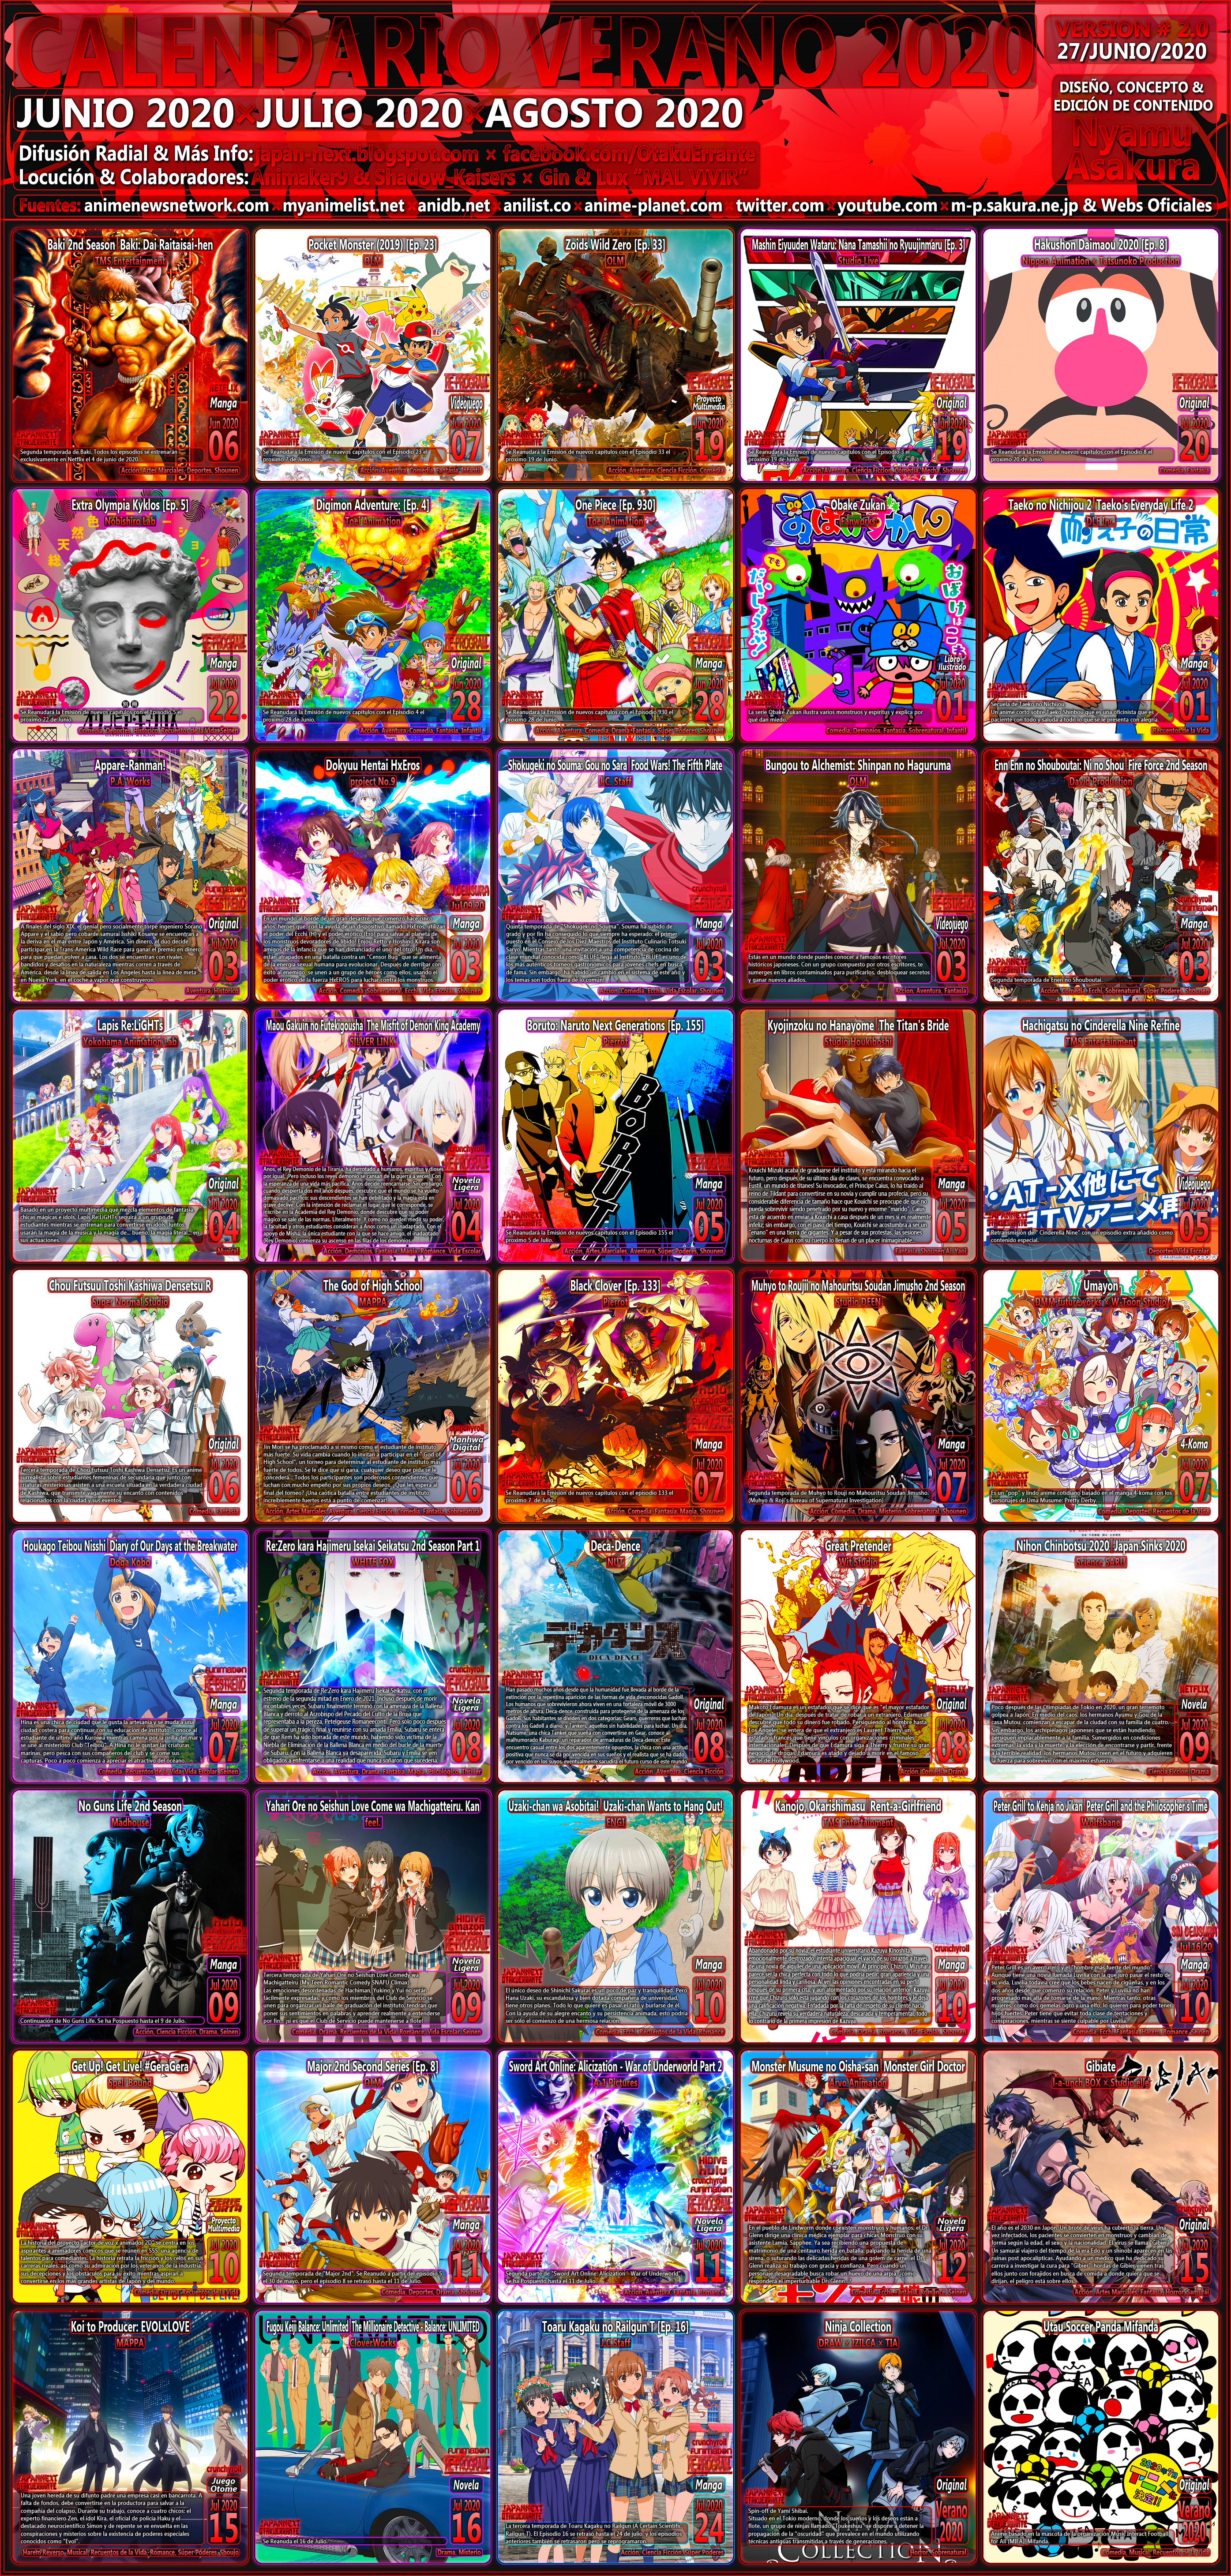 OtakuErrante] Calendario de Estrenos Anime Temporada Primavera